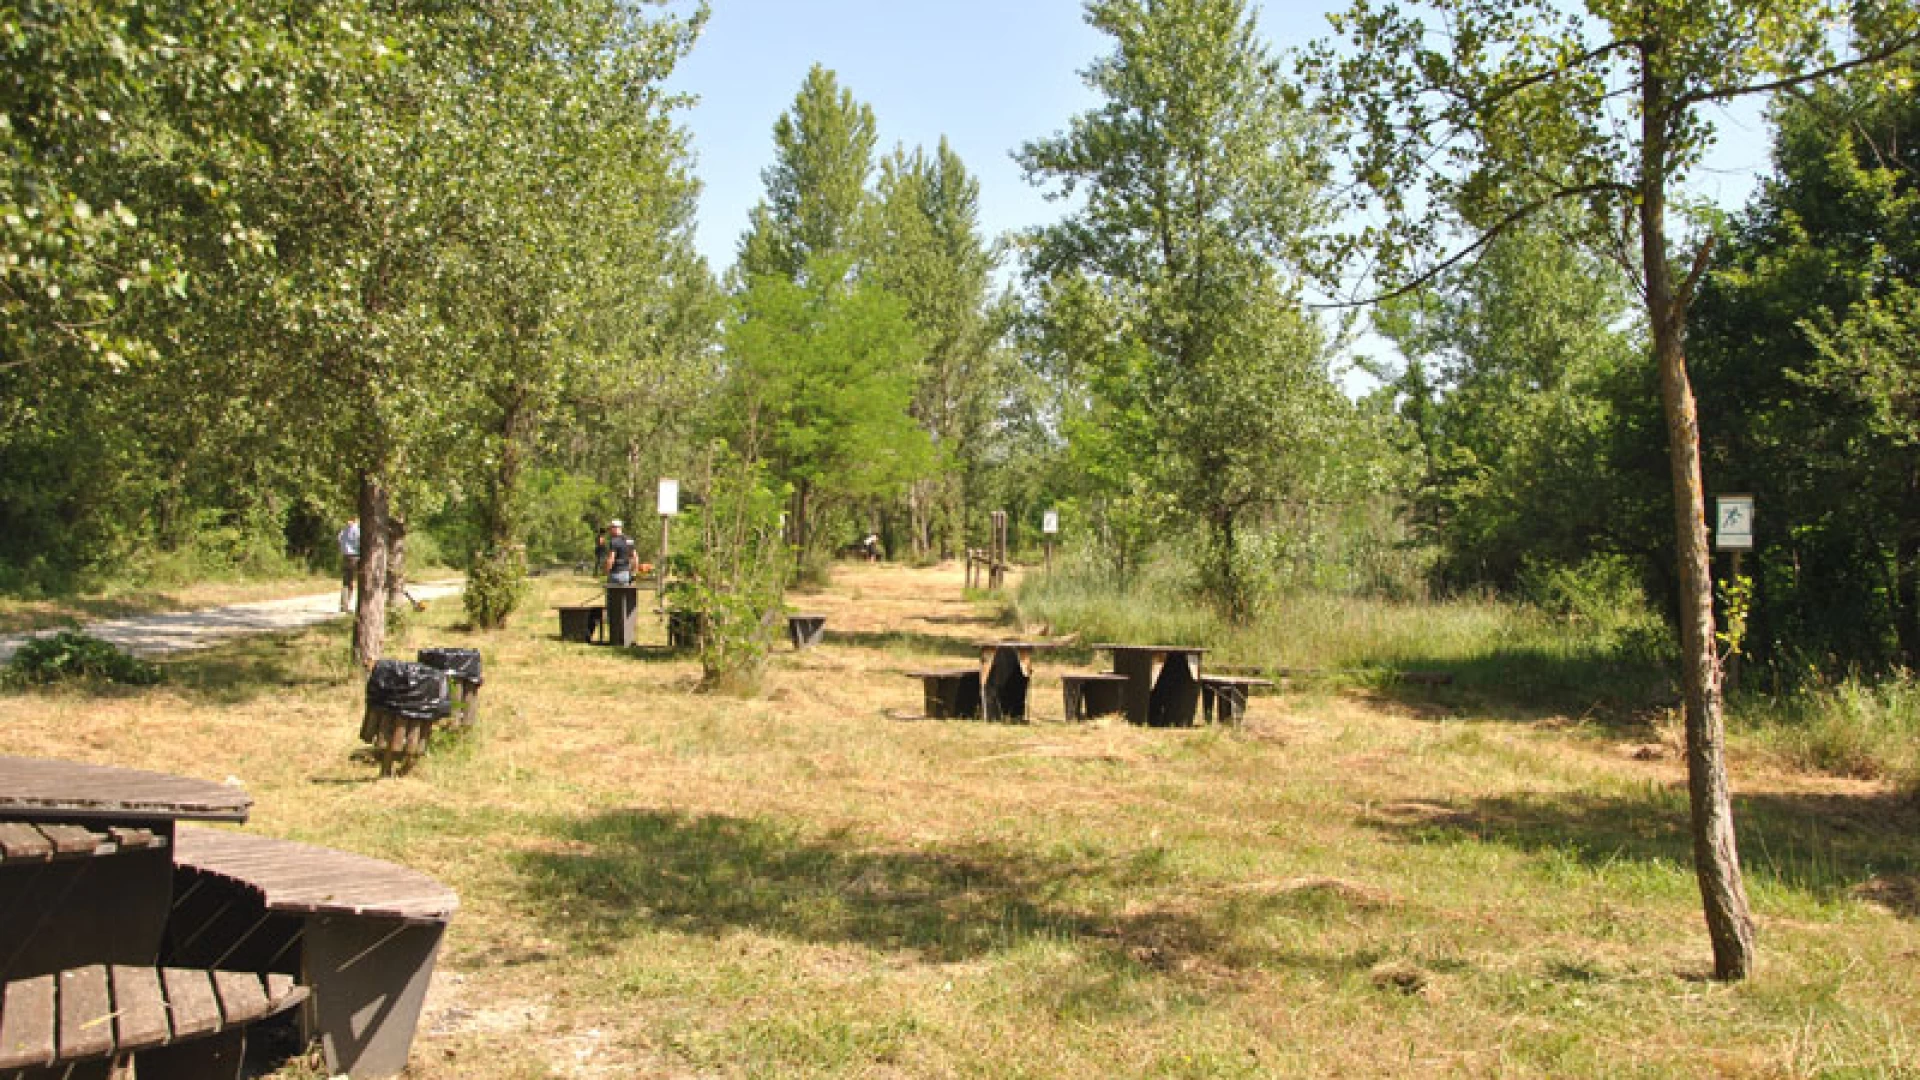 Colli a Volturno: cittadini, amministratori e volontari ripuliscono il parco fluviale.